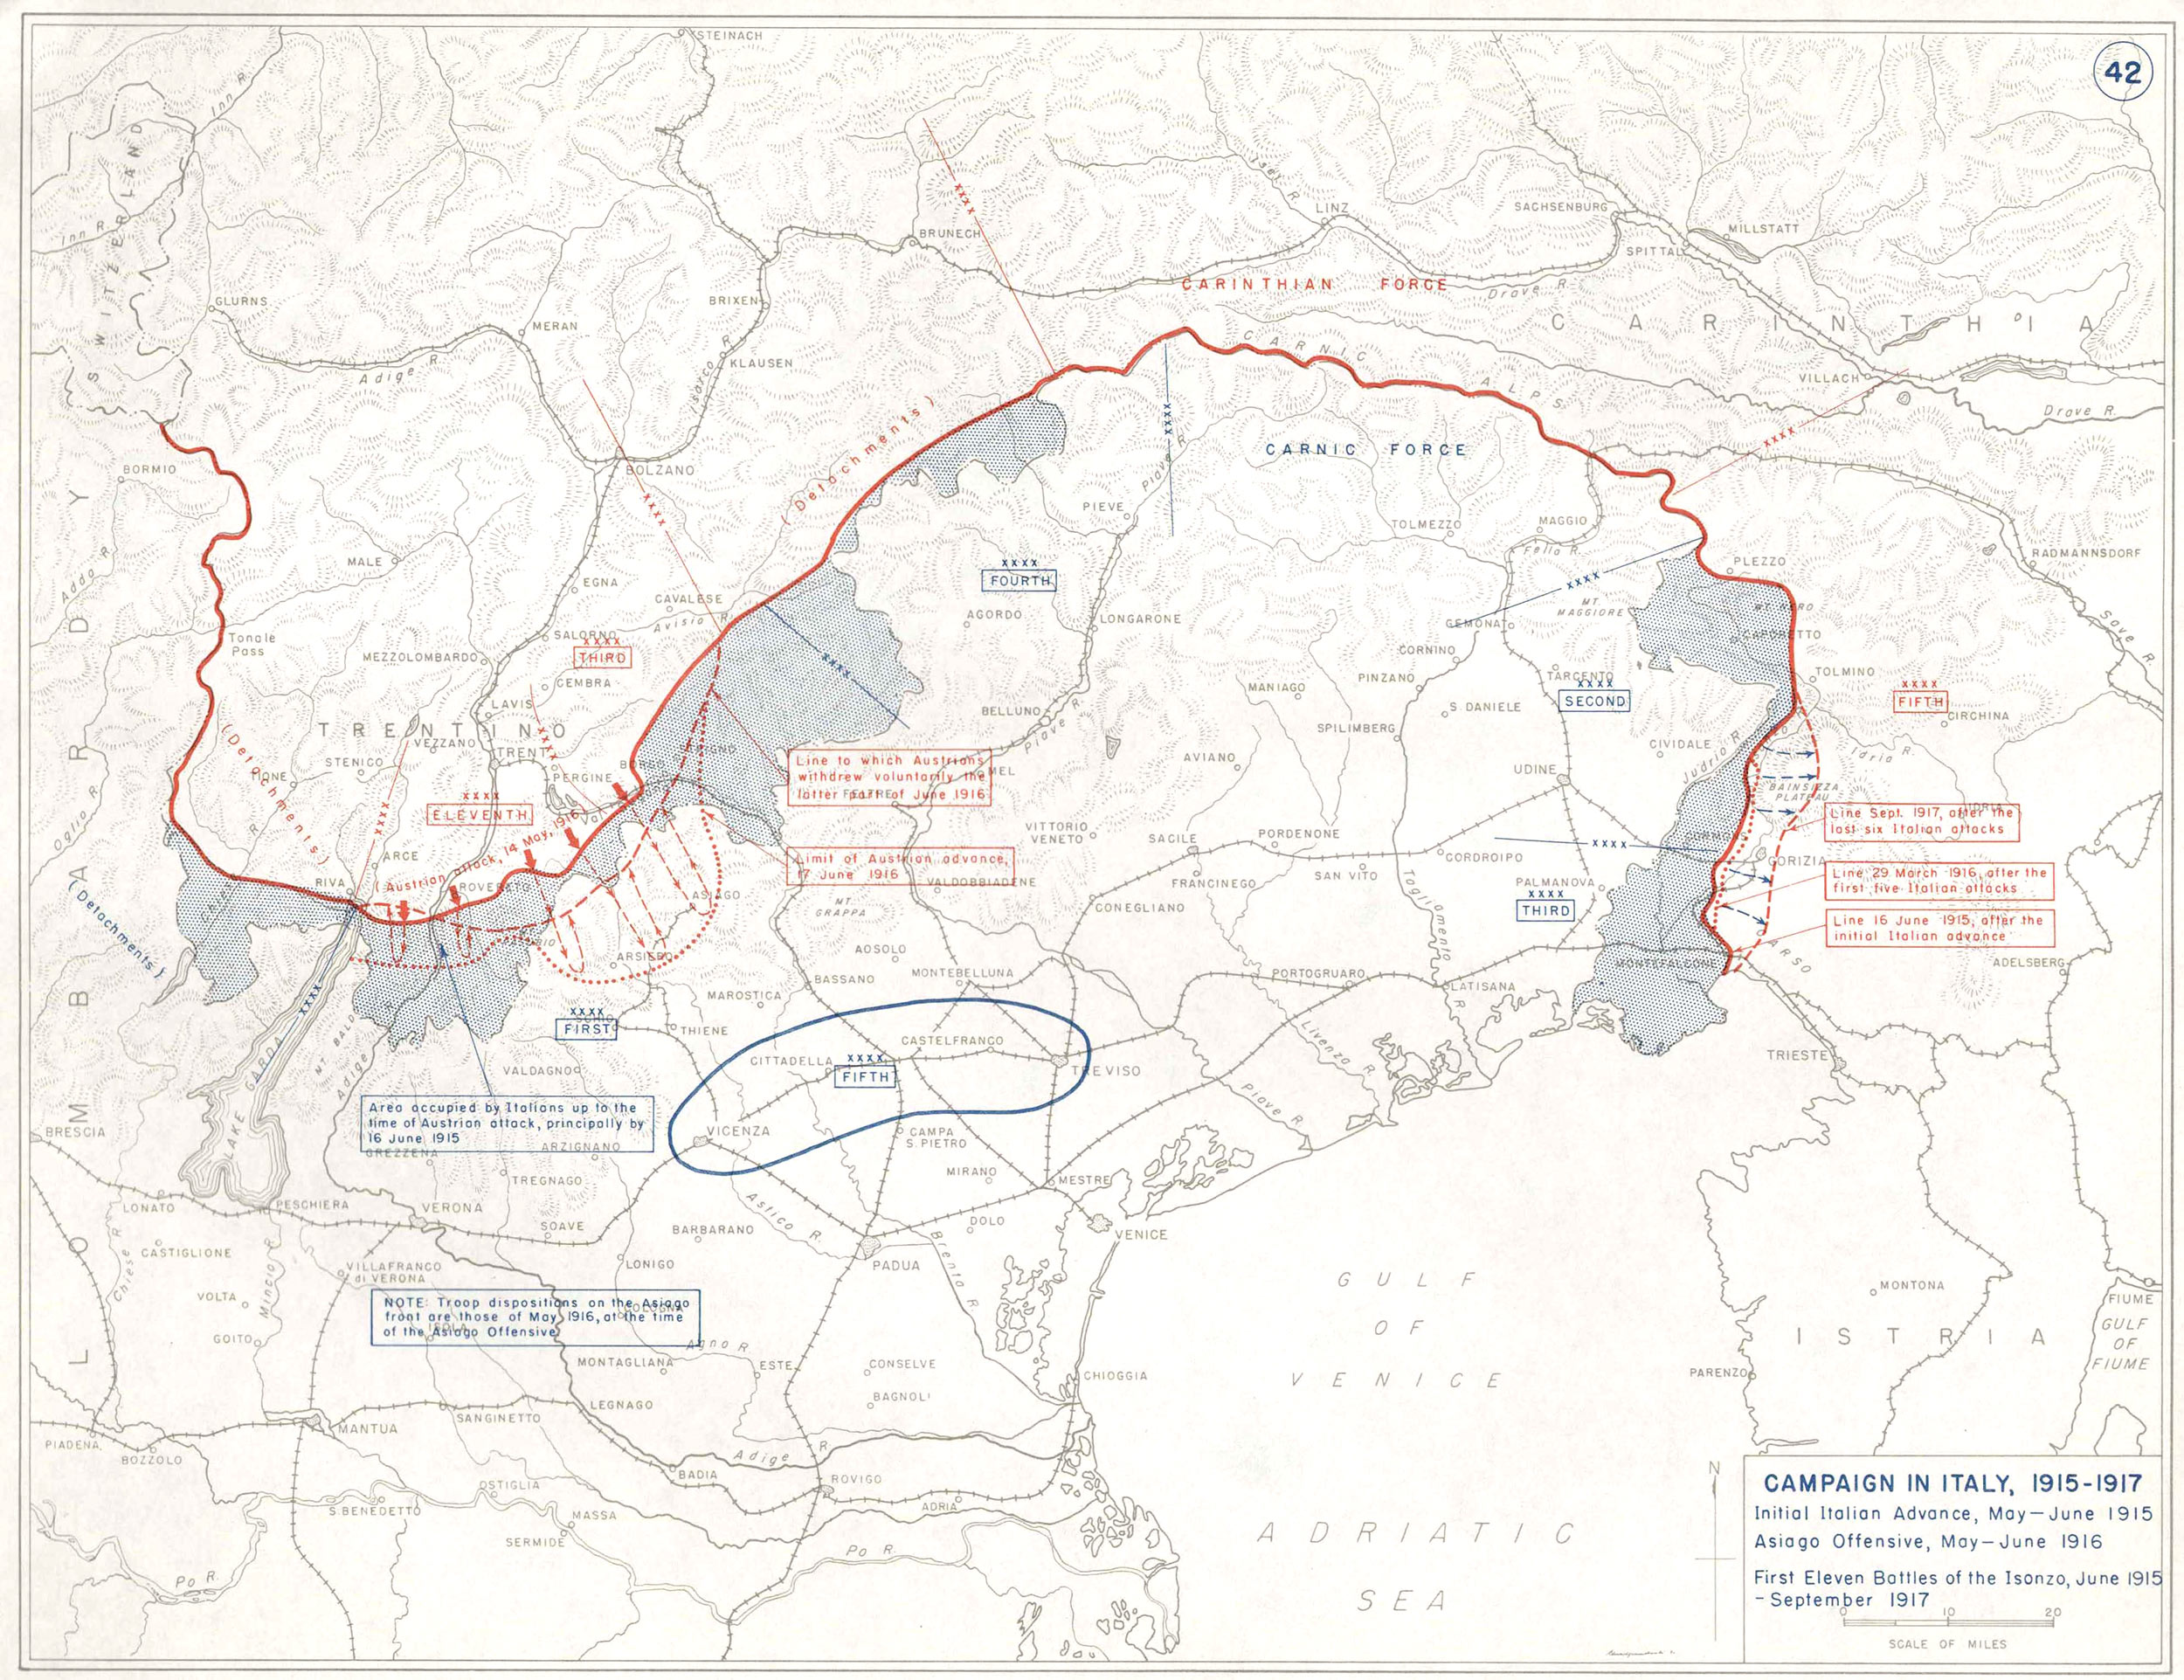 Campagna in Italia, 1915-1917